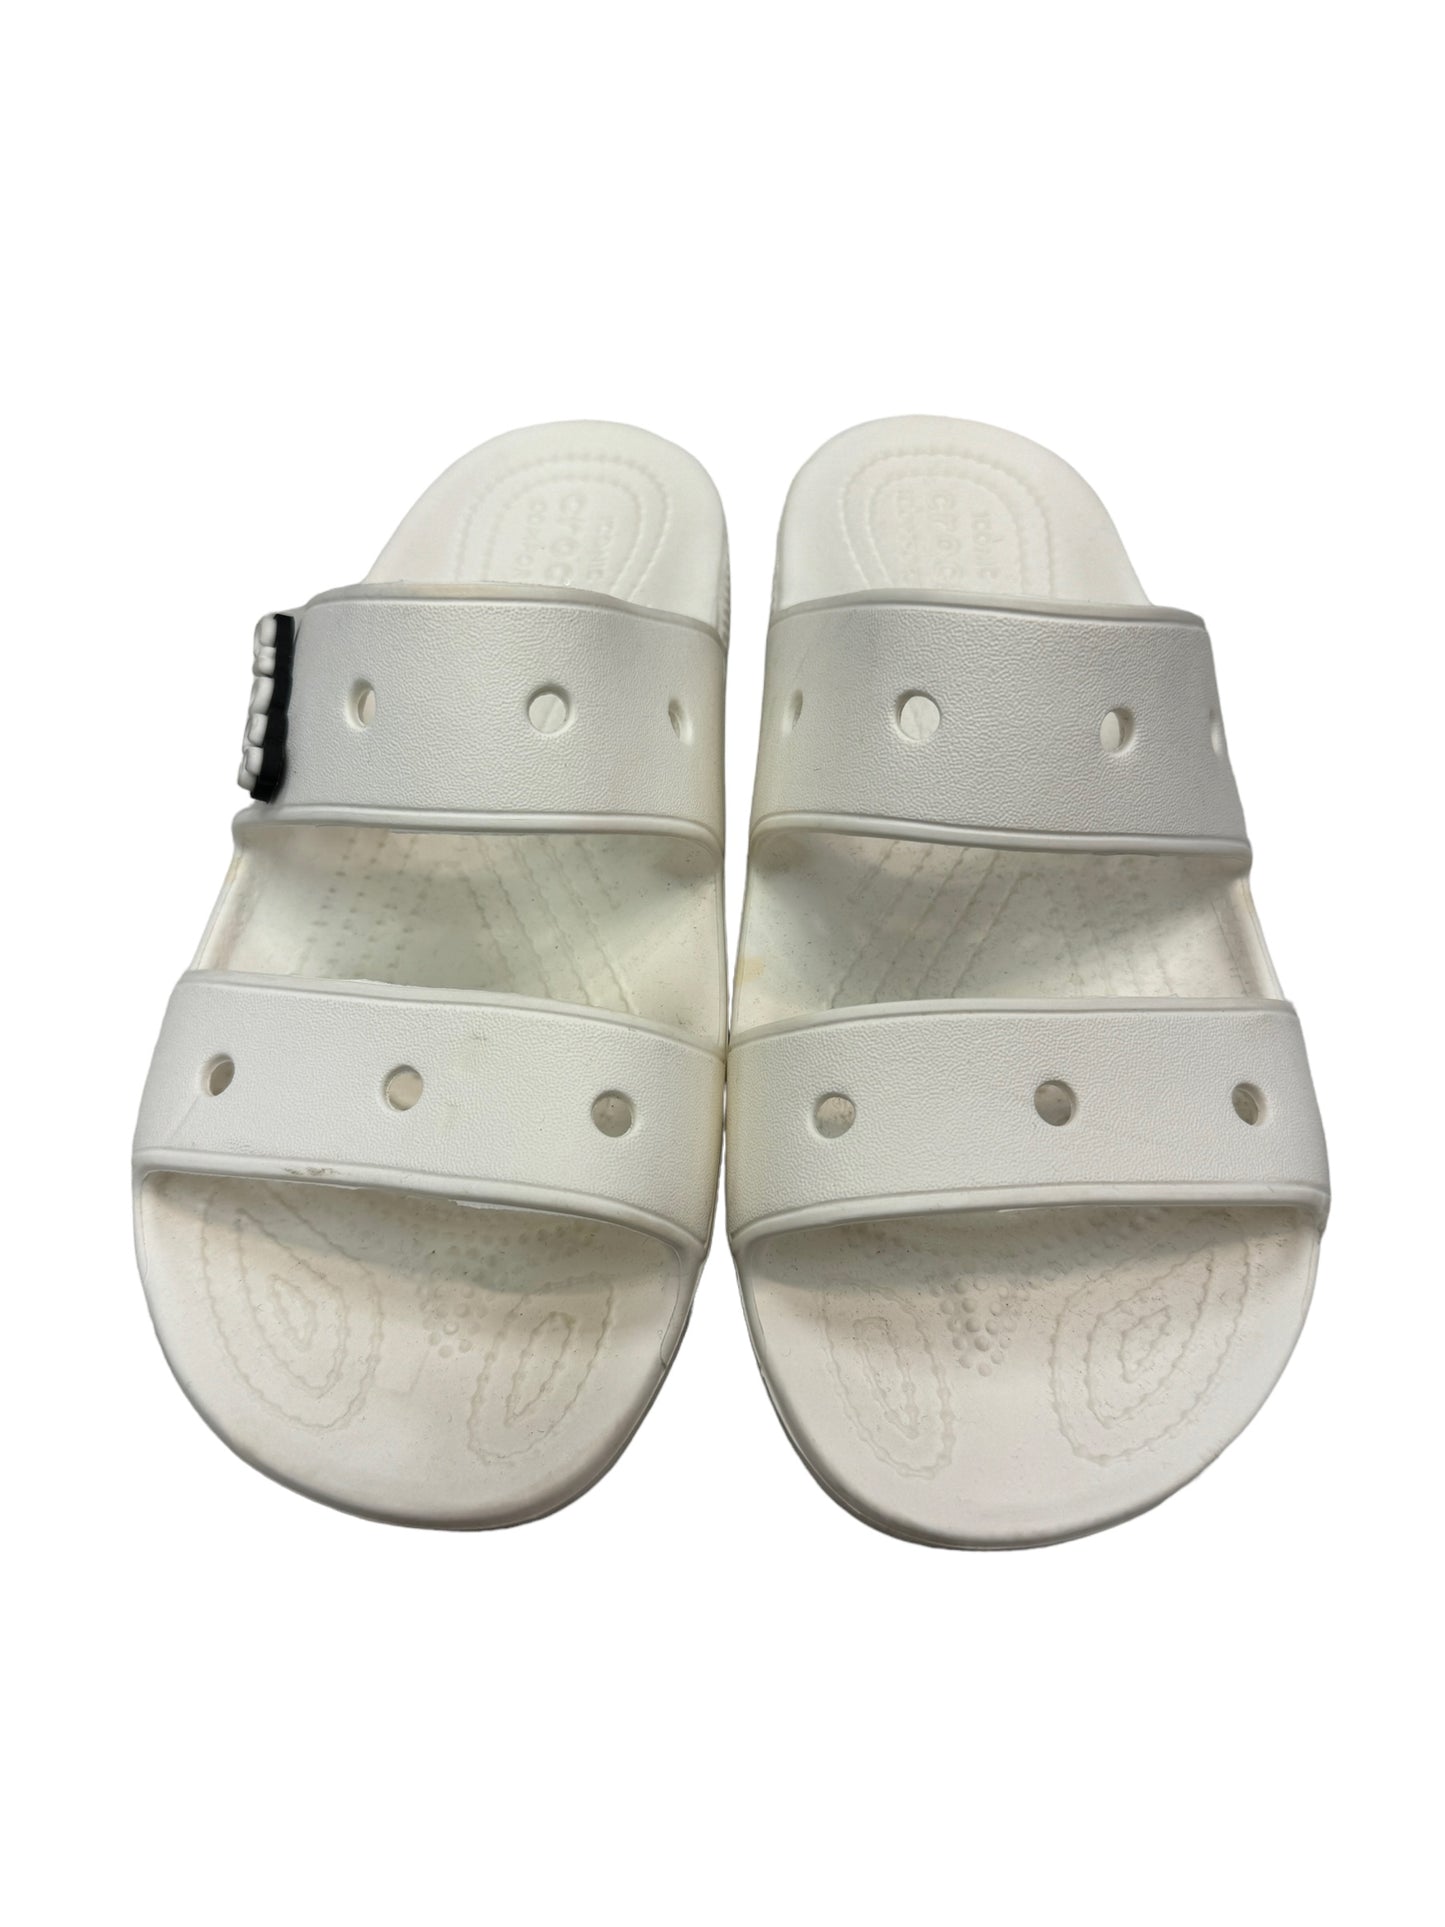 Sandals Flats By Crocs  Size: 8